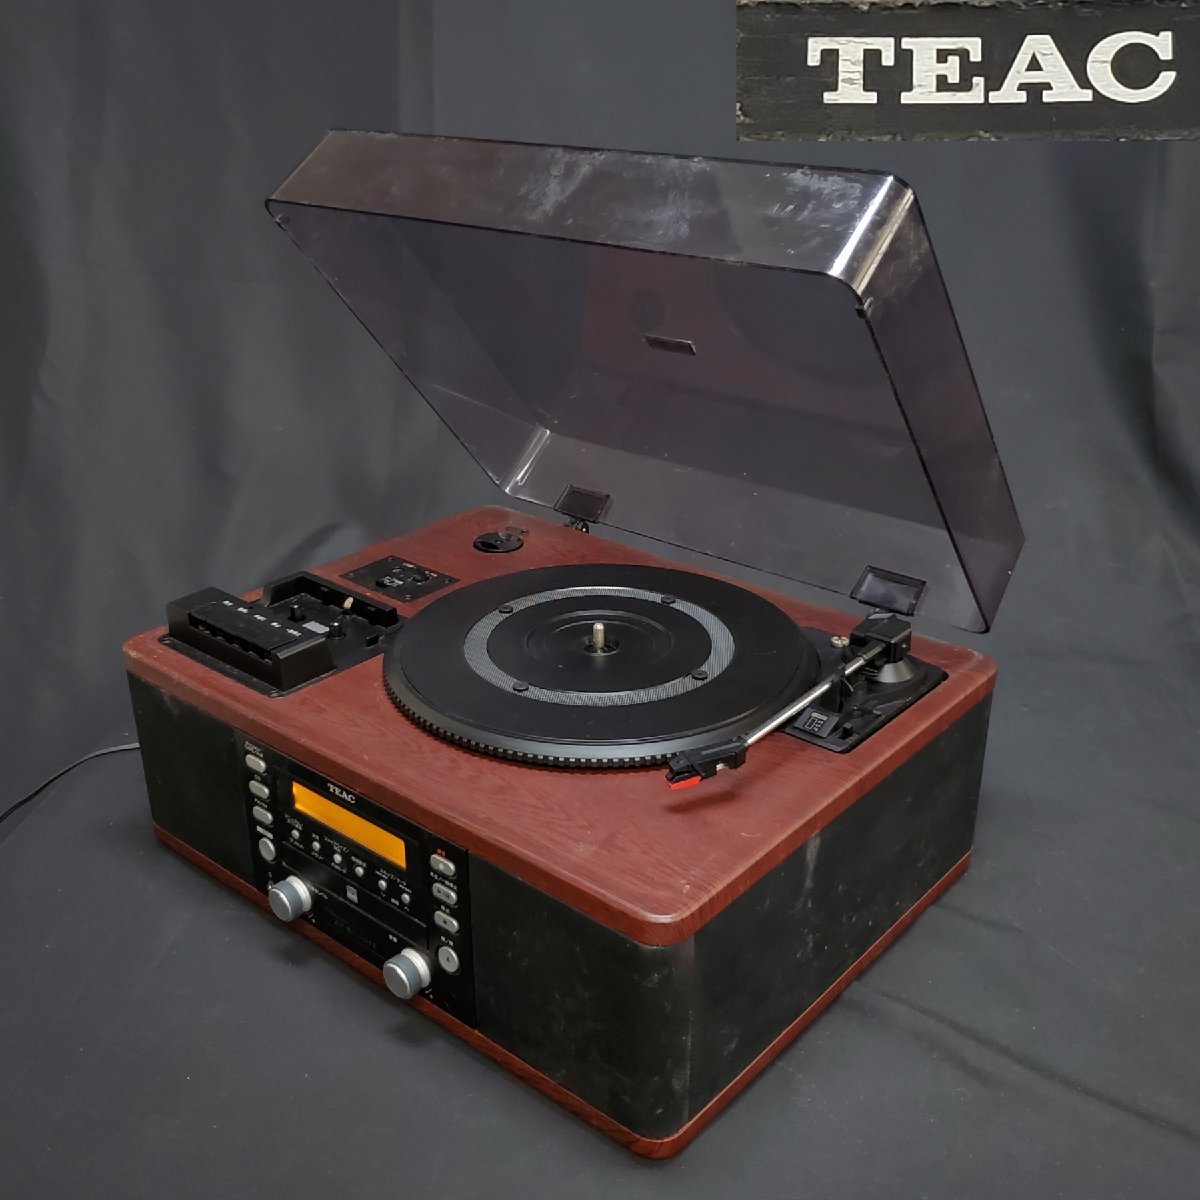 【宝蔵】2014年製 TEAC レコードプレーヤー マルチプレーヤー オーディオ機器 LP-550USB 約47㎝×約37㎝×高さ約23㎝ 木目調 動作品